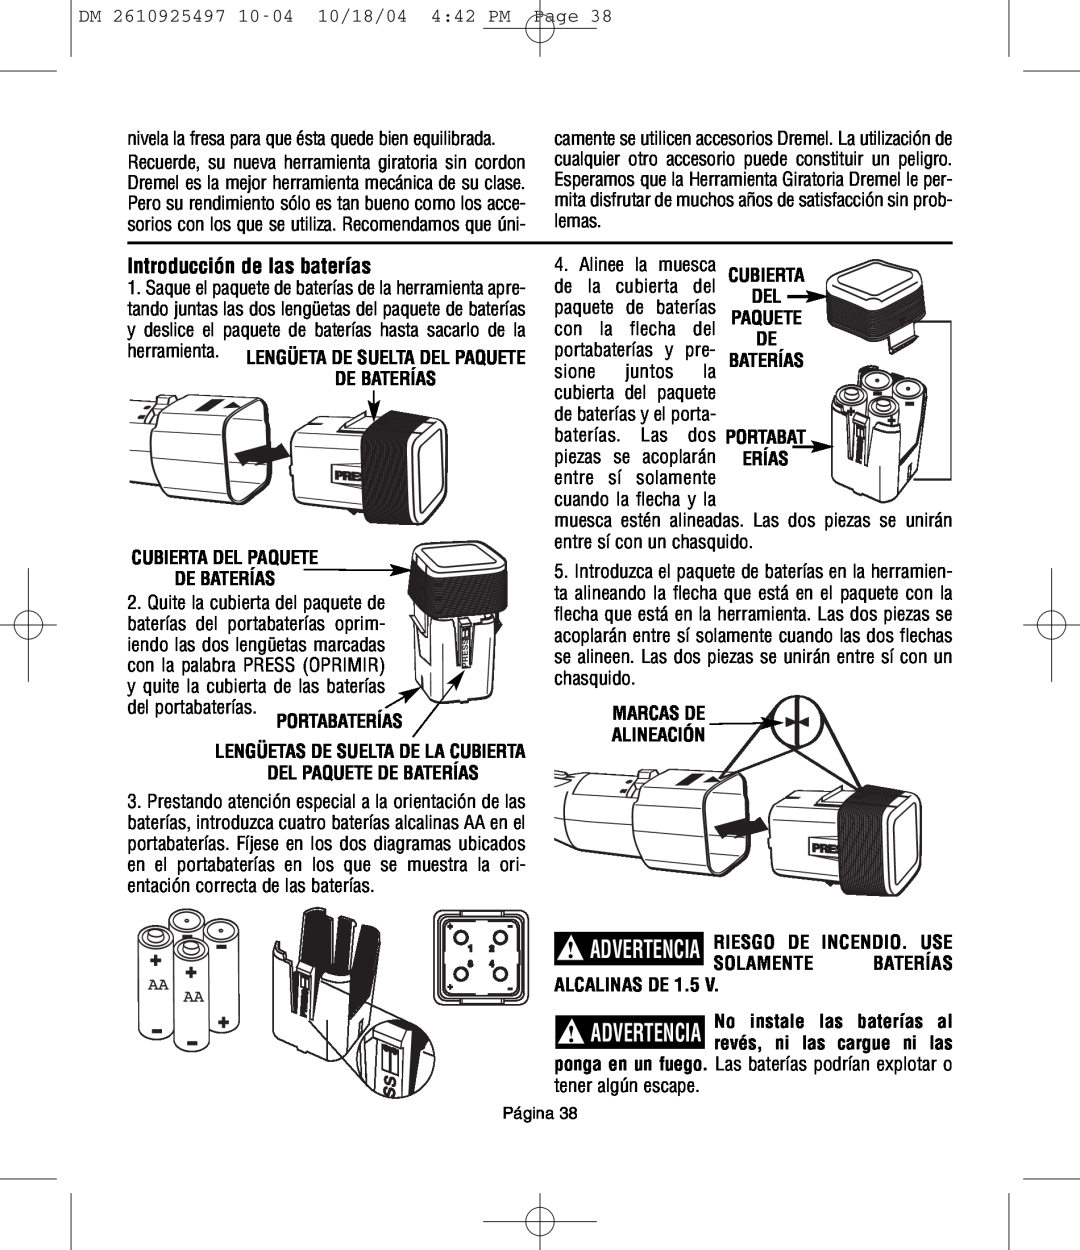 Dremel 764 Introducción de las baterías, Cubierta Del Paquete De Baterías, Portabaterías, Solamente Baterías Alcalinas De 